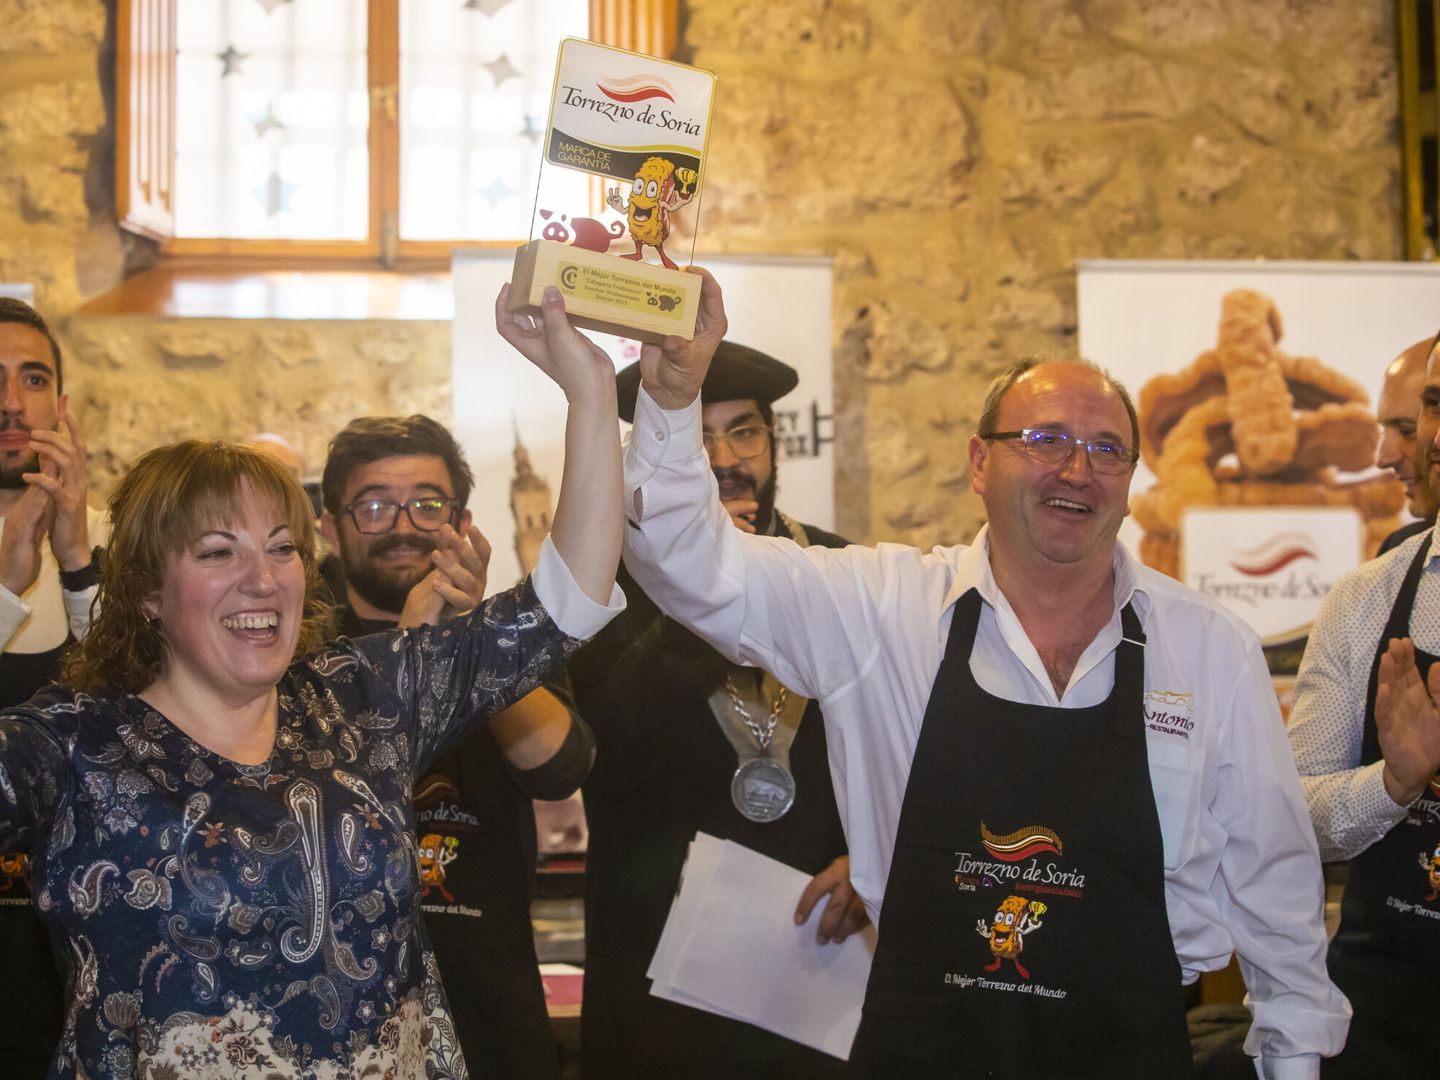 Vicente de Vicente, del restaurante Antonio de San Esteban de Górmaz (Soria), fue el ganador del concurso Mejor Torrezno el año pasado. (EFE/Wifredo García Álvaro)